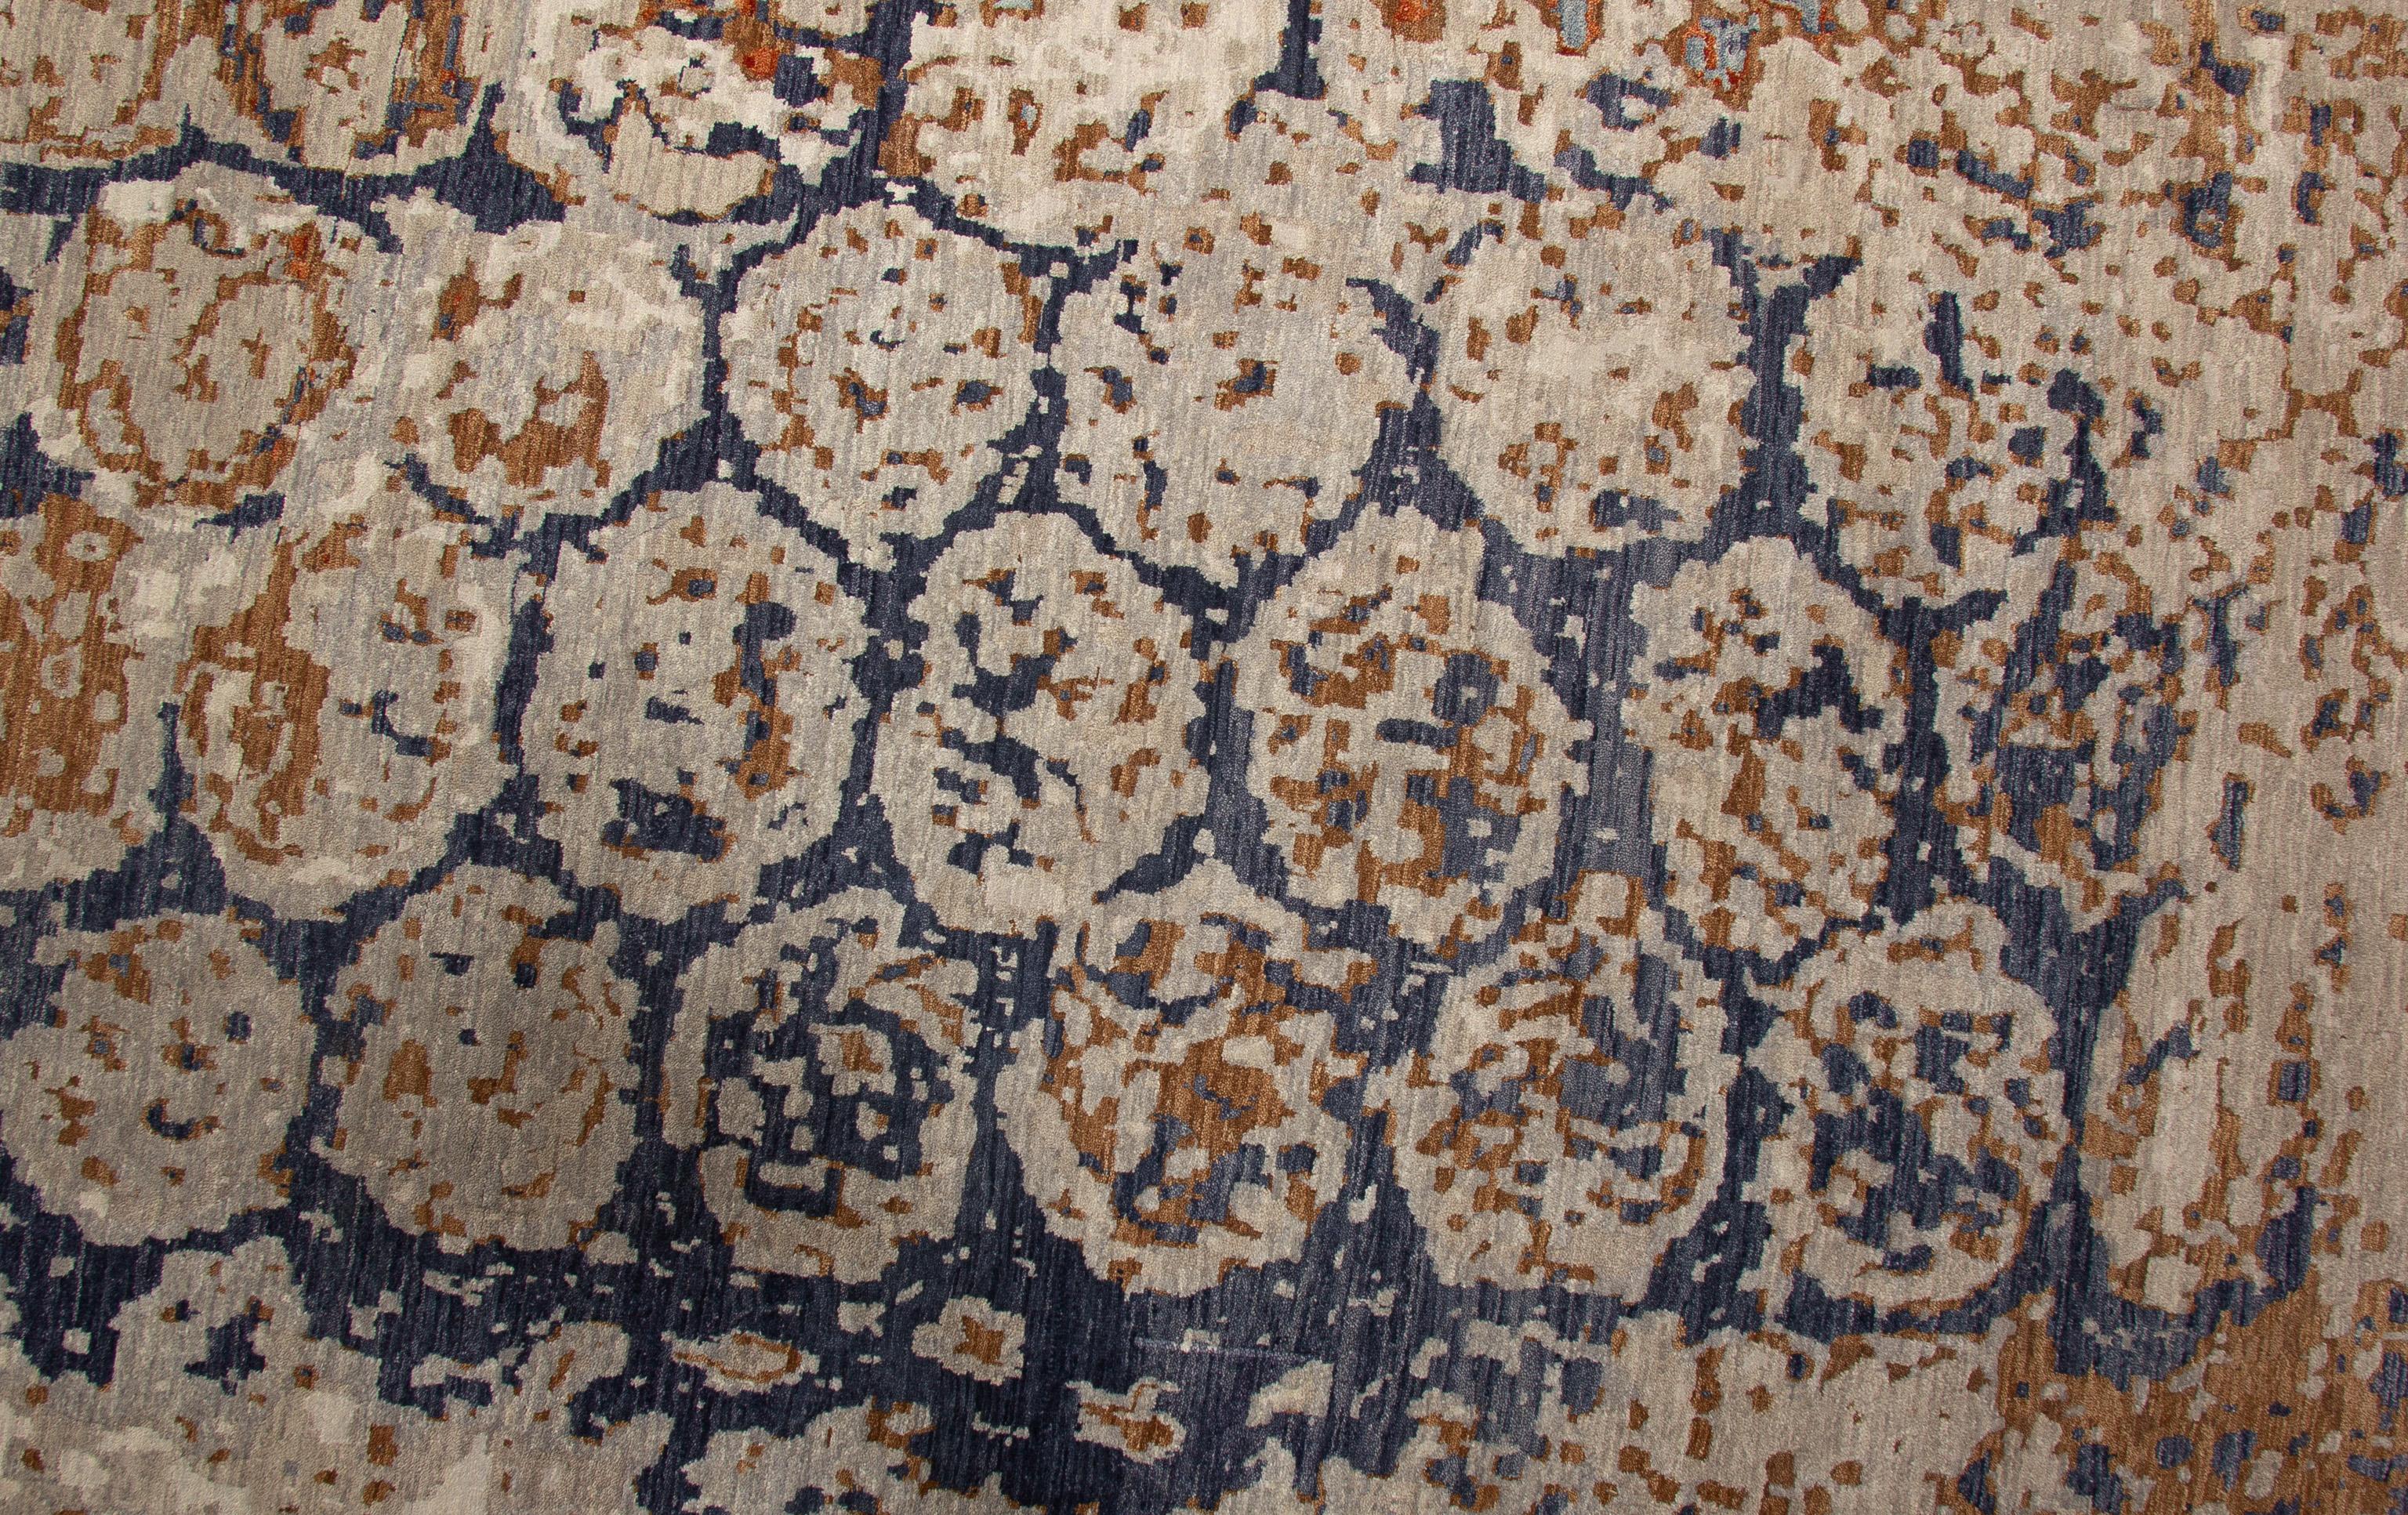 Zeitgenössischer abstrakter Teppich, handgewebt in Indien aus reiner handgesponnener Wolle. Auffällig sind die kräftigen Farben Hell- und Dunkelblau, Taupe und Gebranntes Orange mit einem lustigen Kreismuster. 

Größe - 10' x 13'10